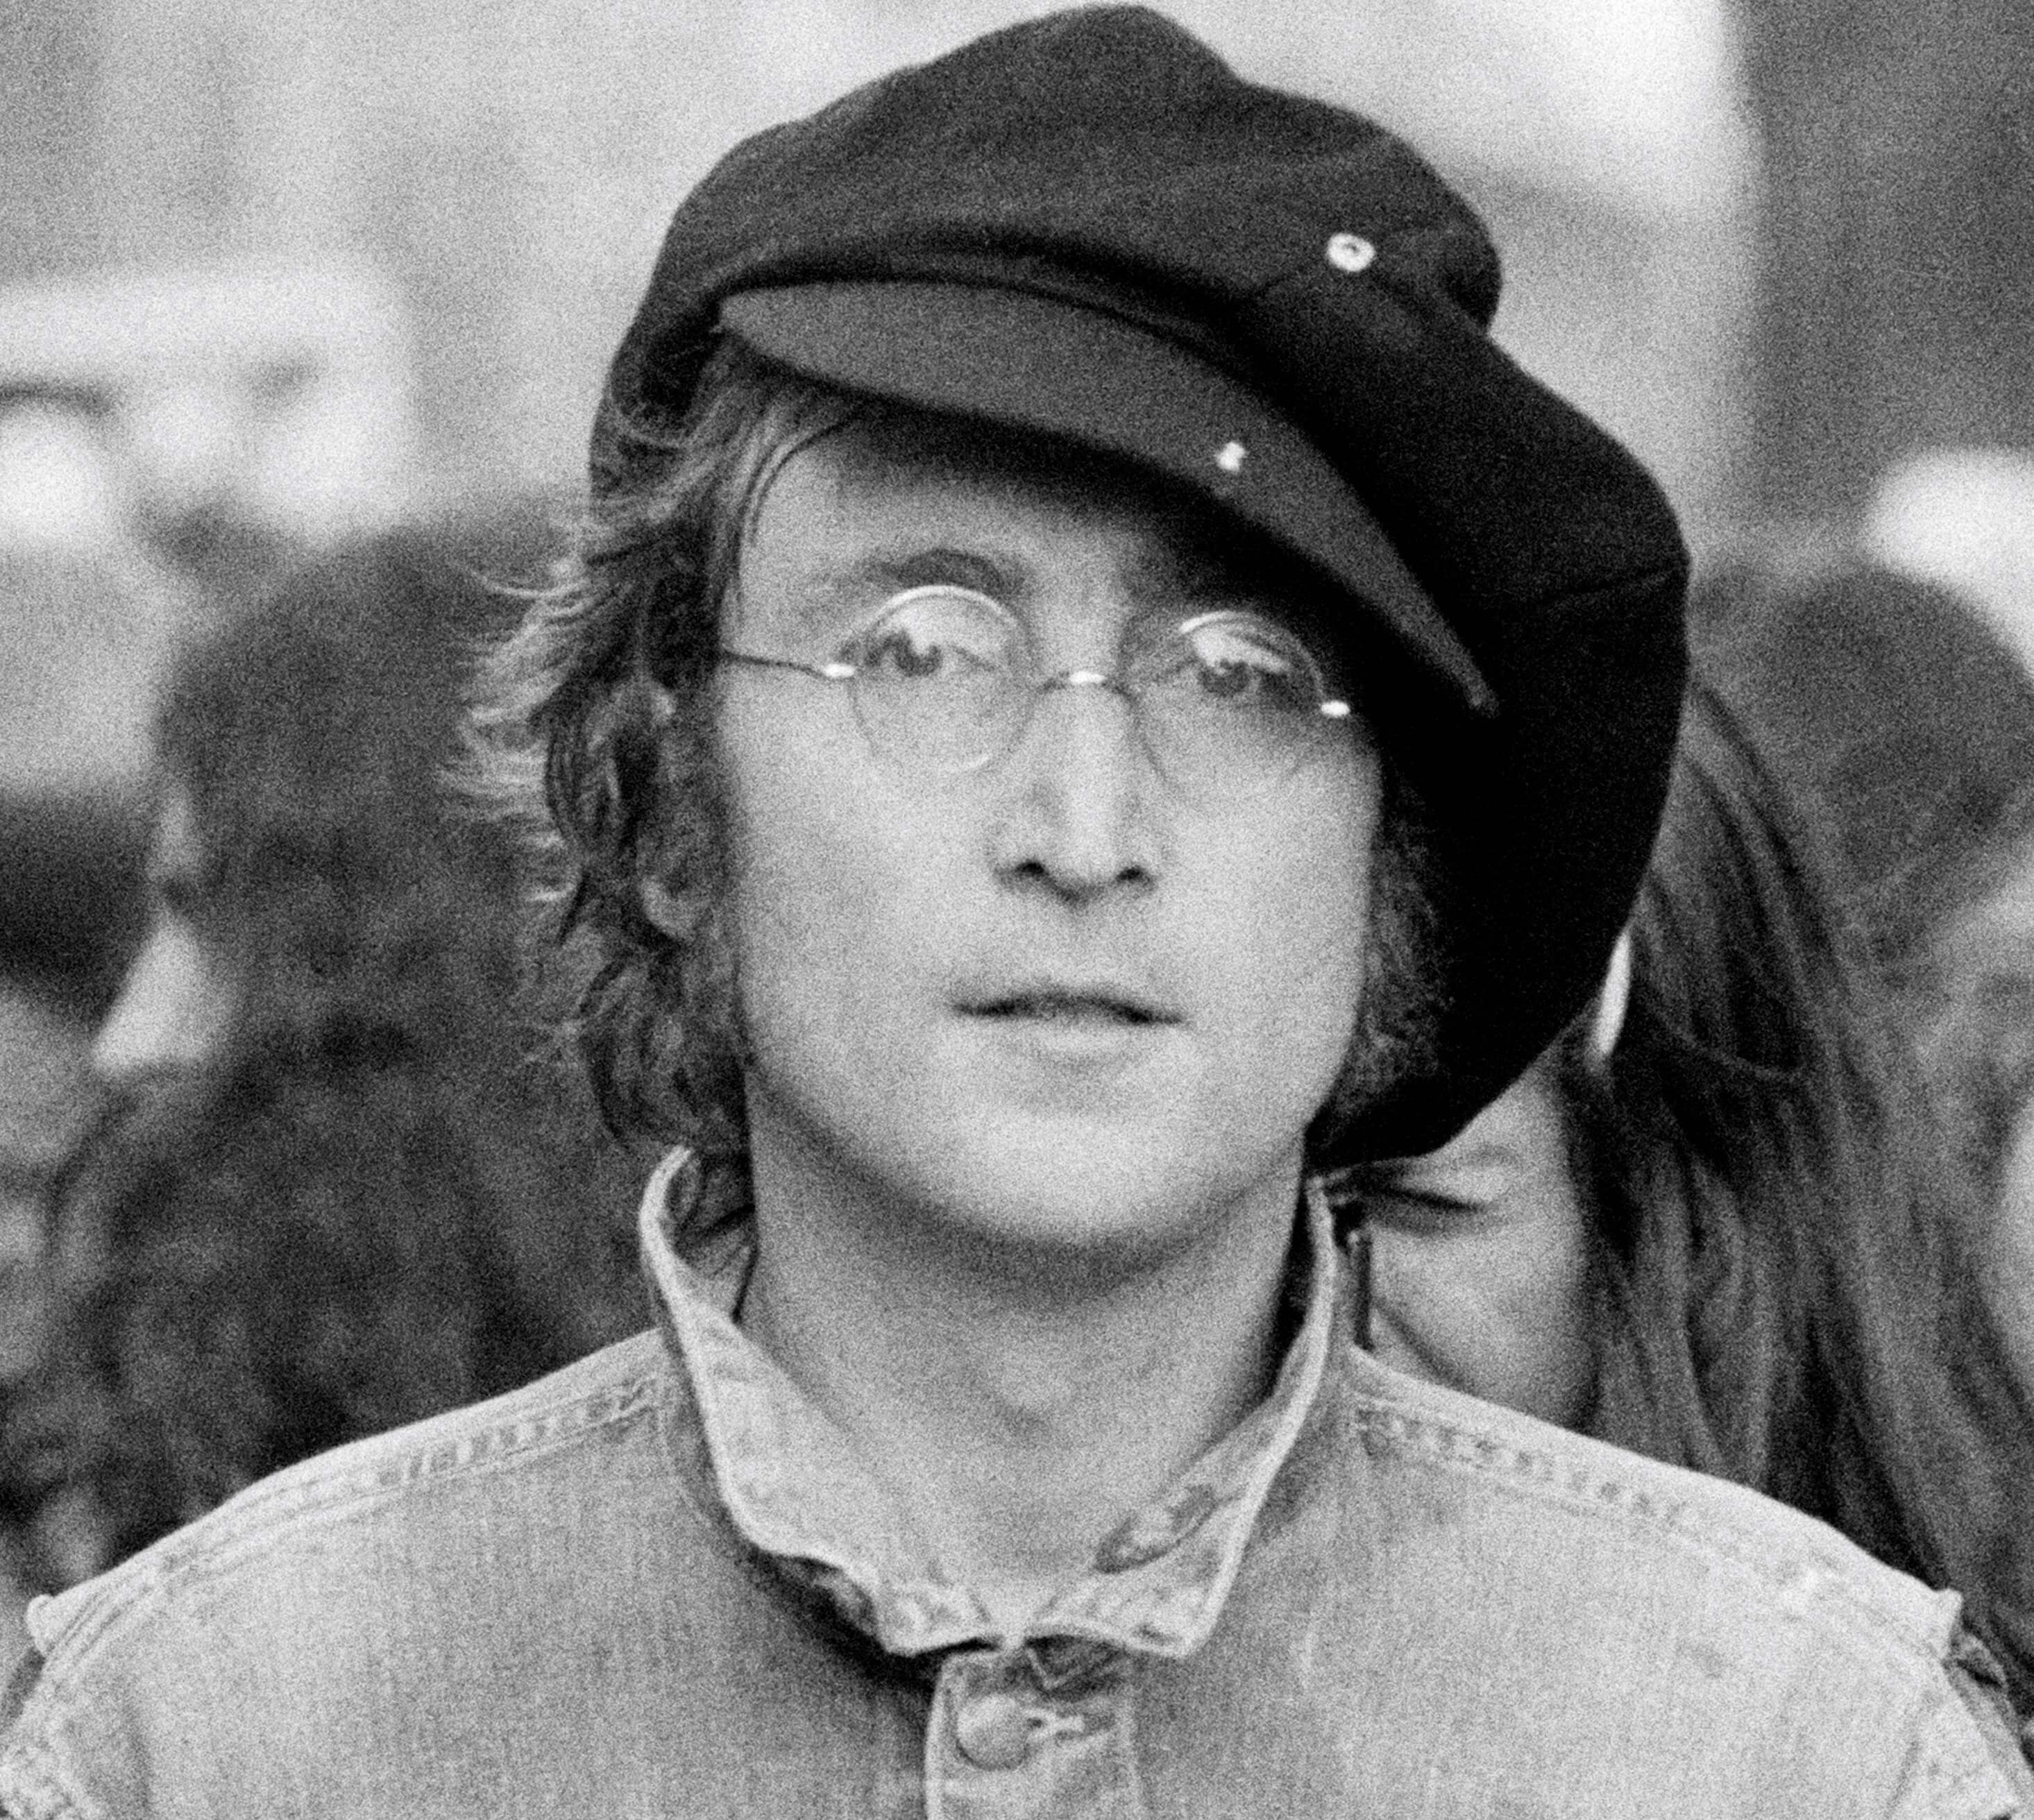 John Lennon wearing a beret